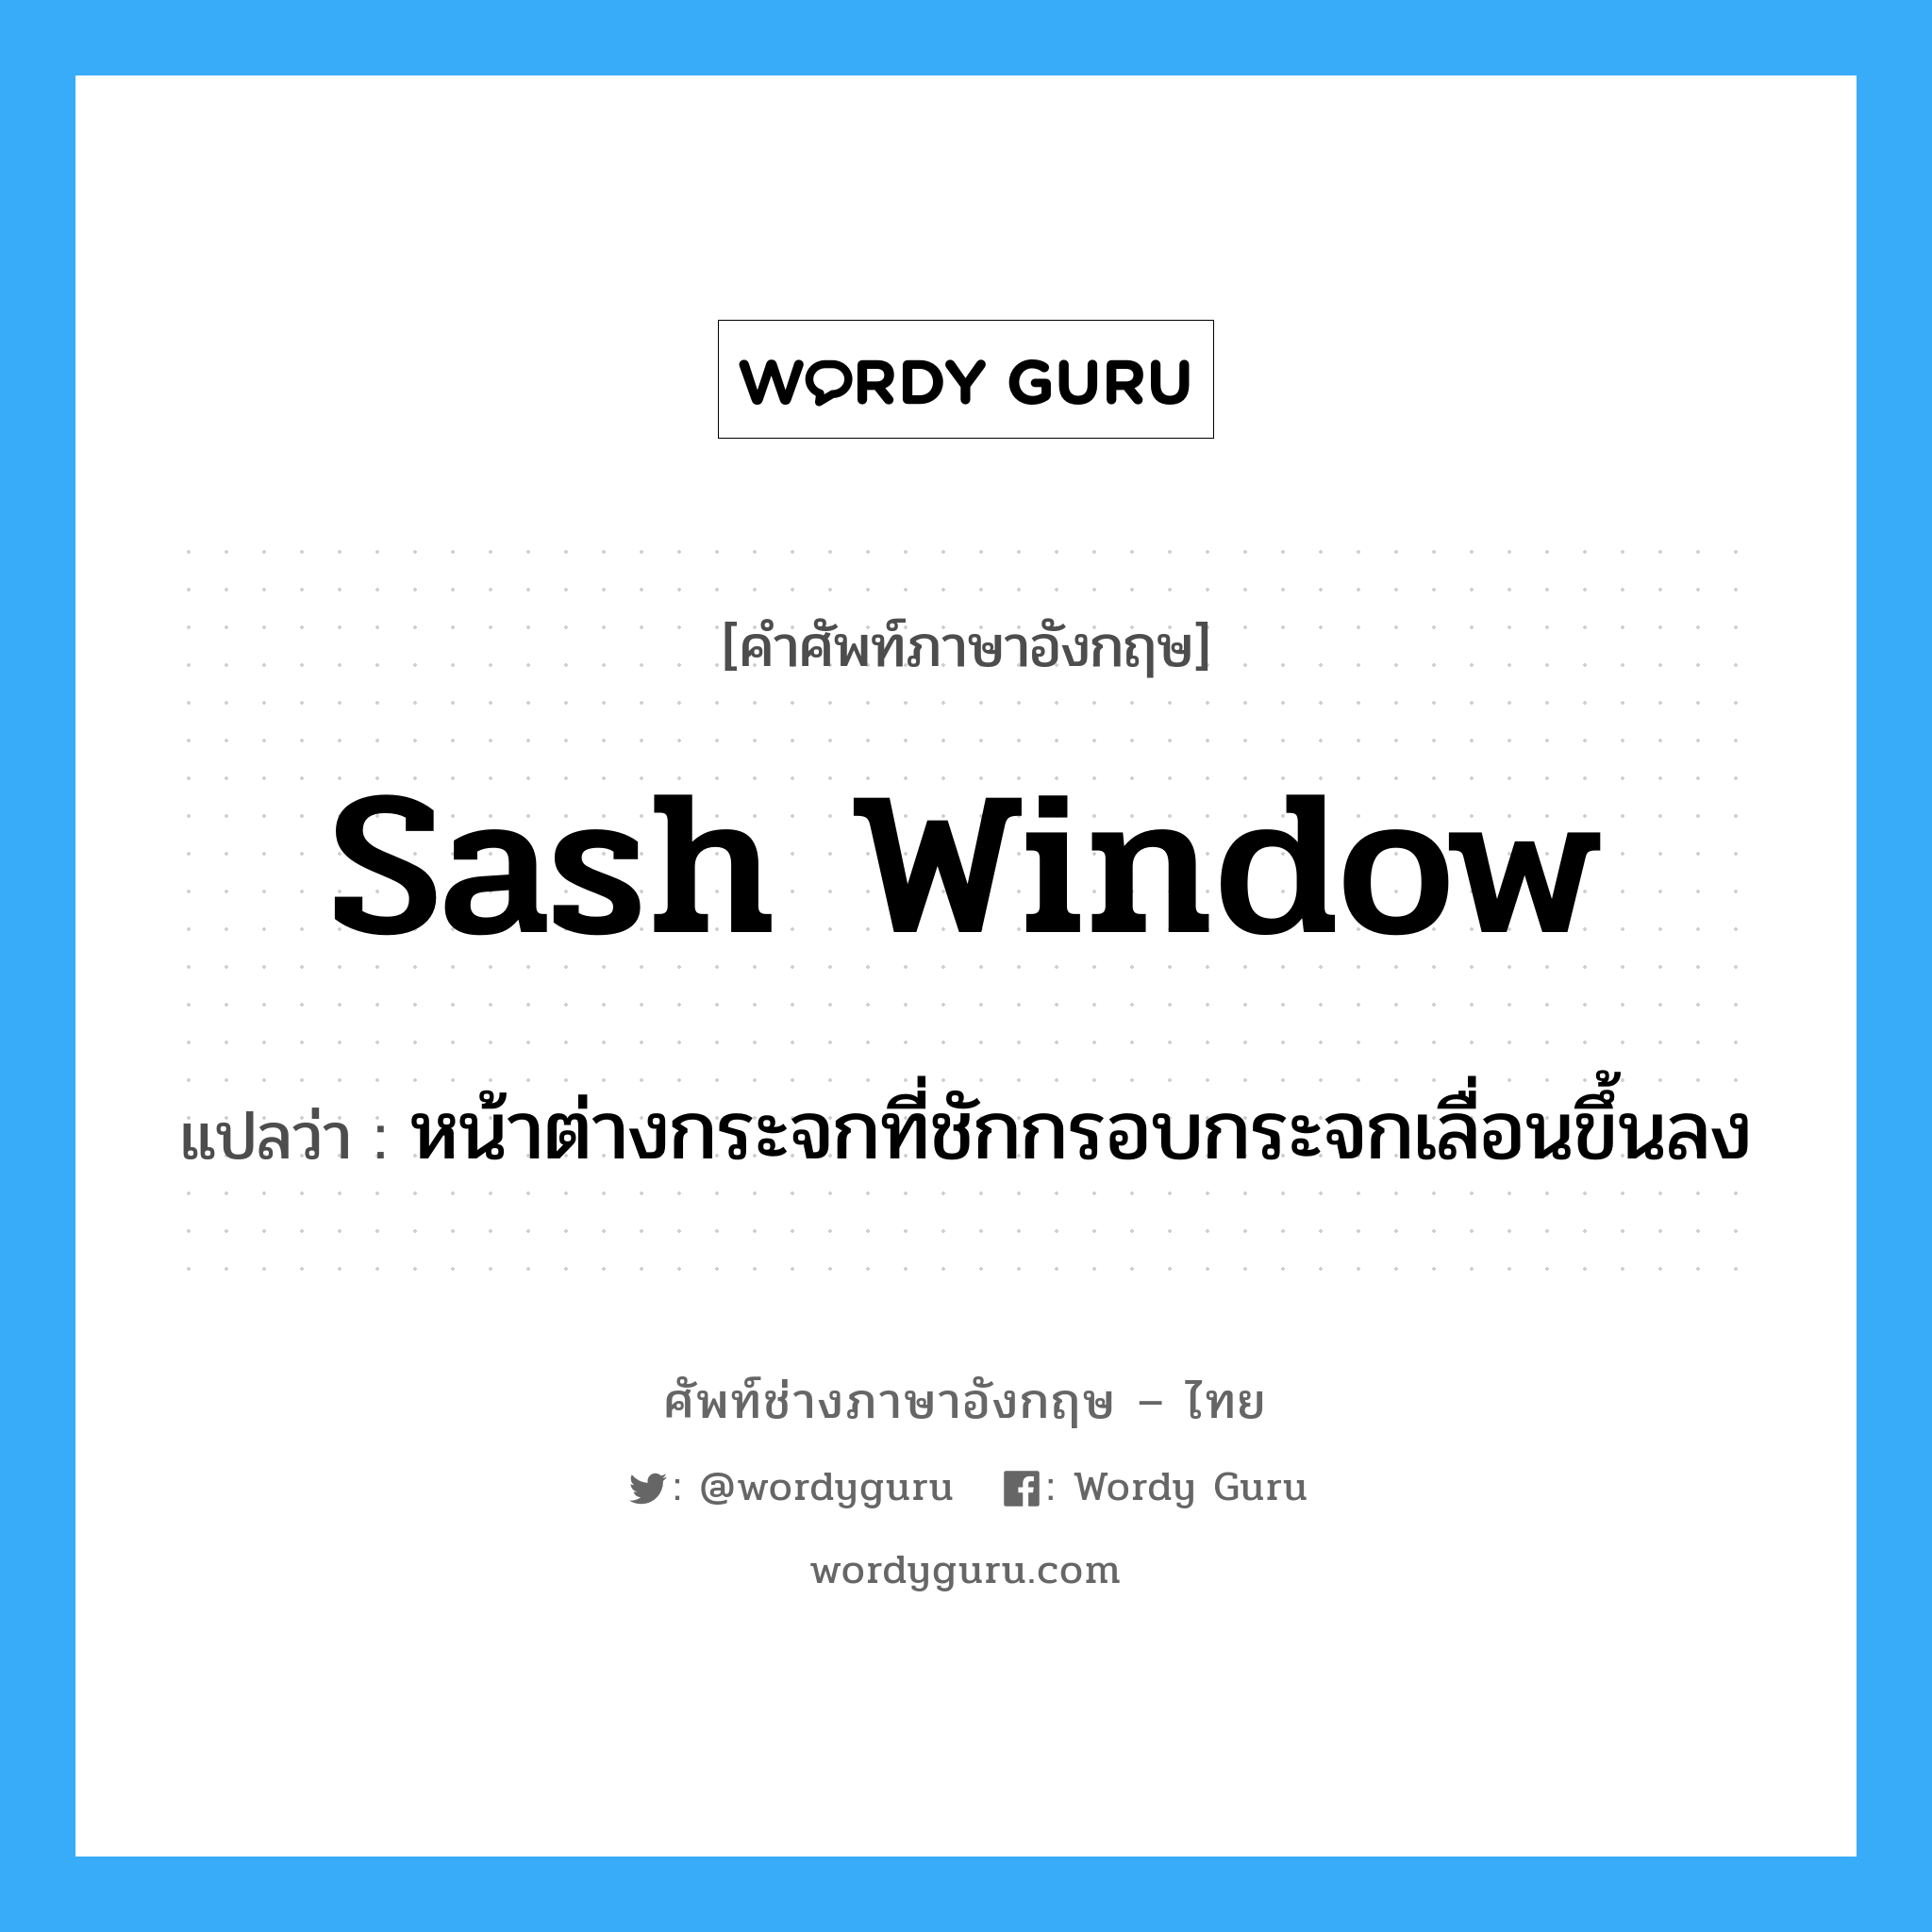 sash window แปลว่า?, คำศัพท์ช่างภาษาอังกฤษ - ไทย sash window คำศัพท์ภาษาอังกฤษ sash window แปลว่า หน้าต่างกระจกที่ชักกรอบกระจกเลื่อนขึ้นลง